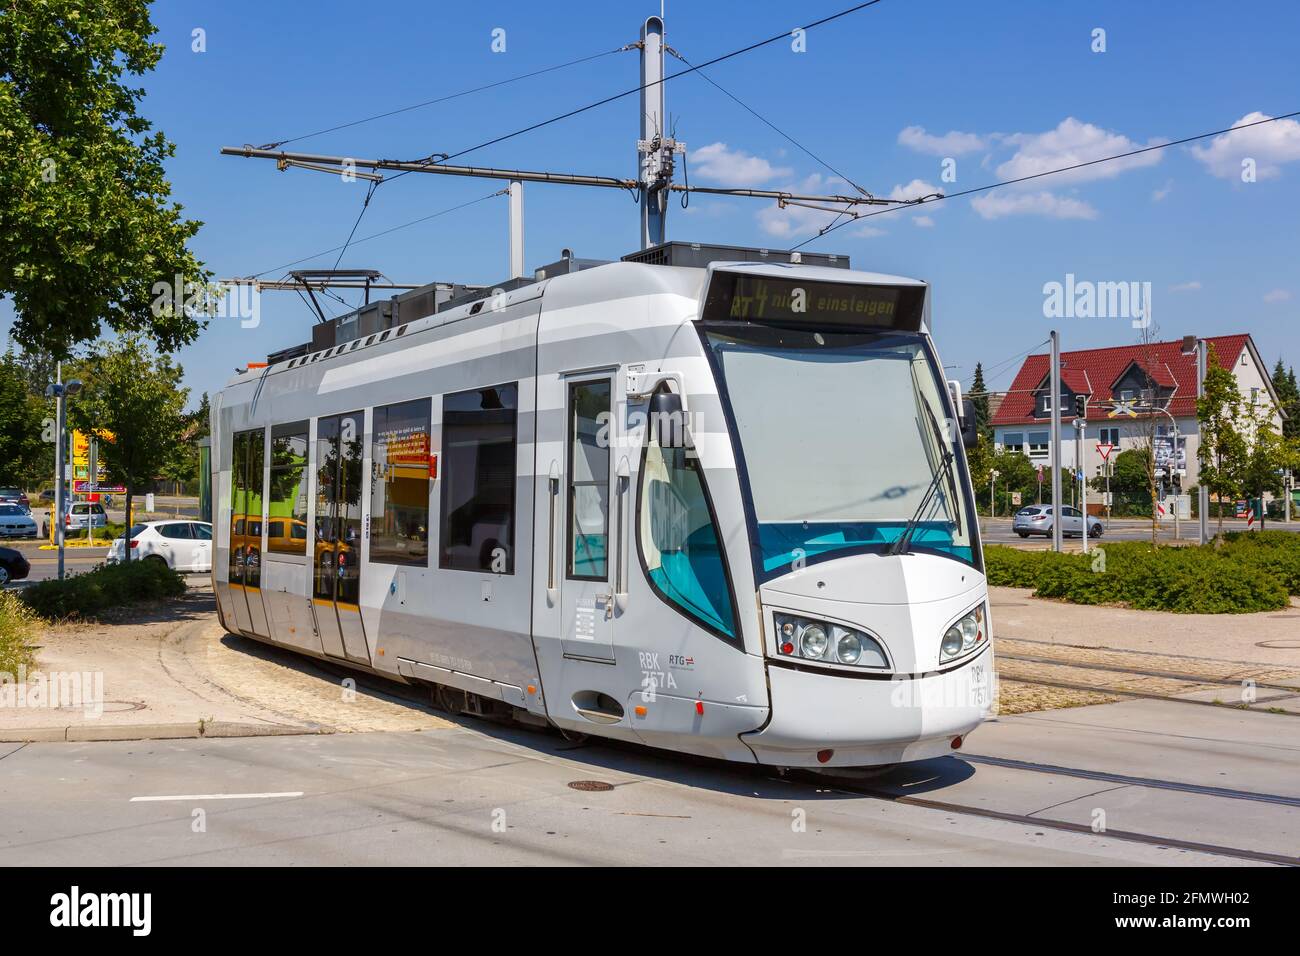 Kassel, Germany - August 8, 2020: RegioTram Kassel tram train public transport Holländische Strasse station in Germany. Stock Photo